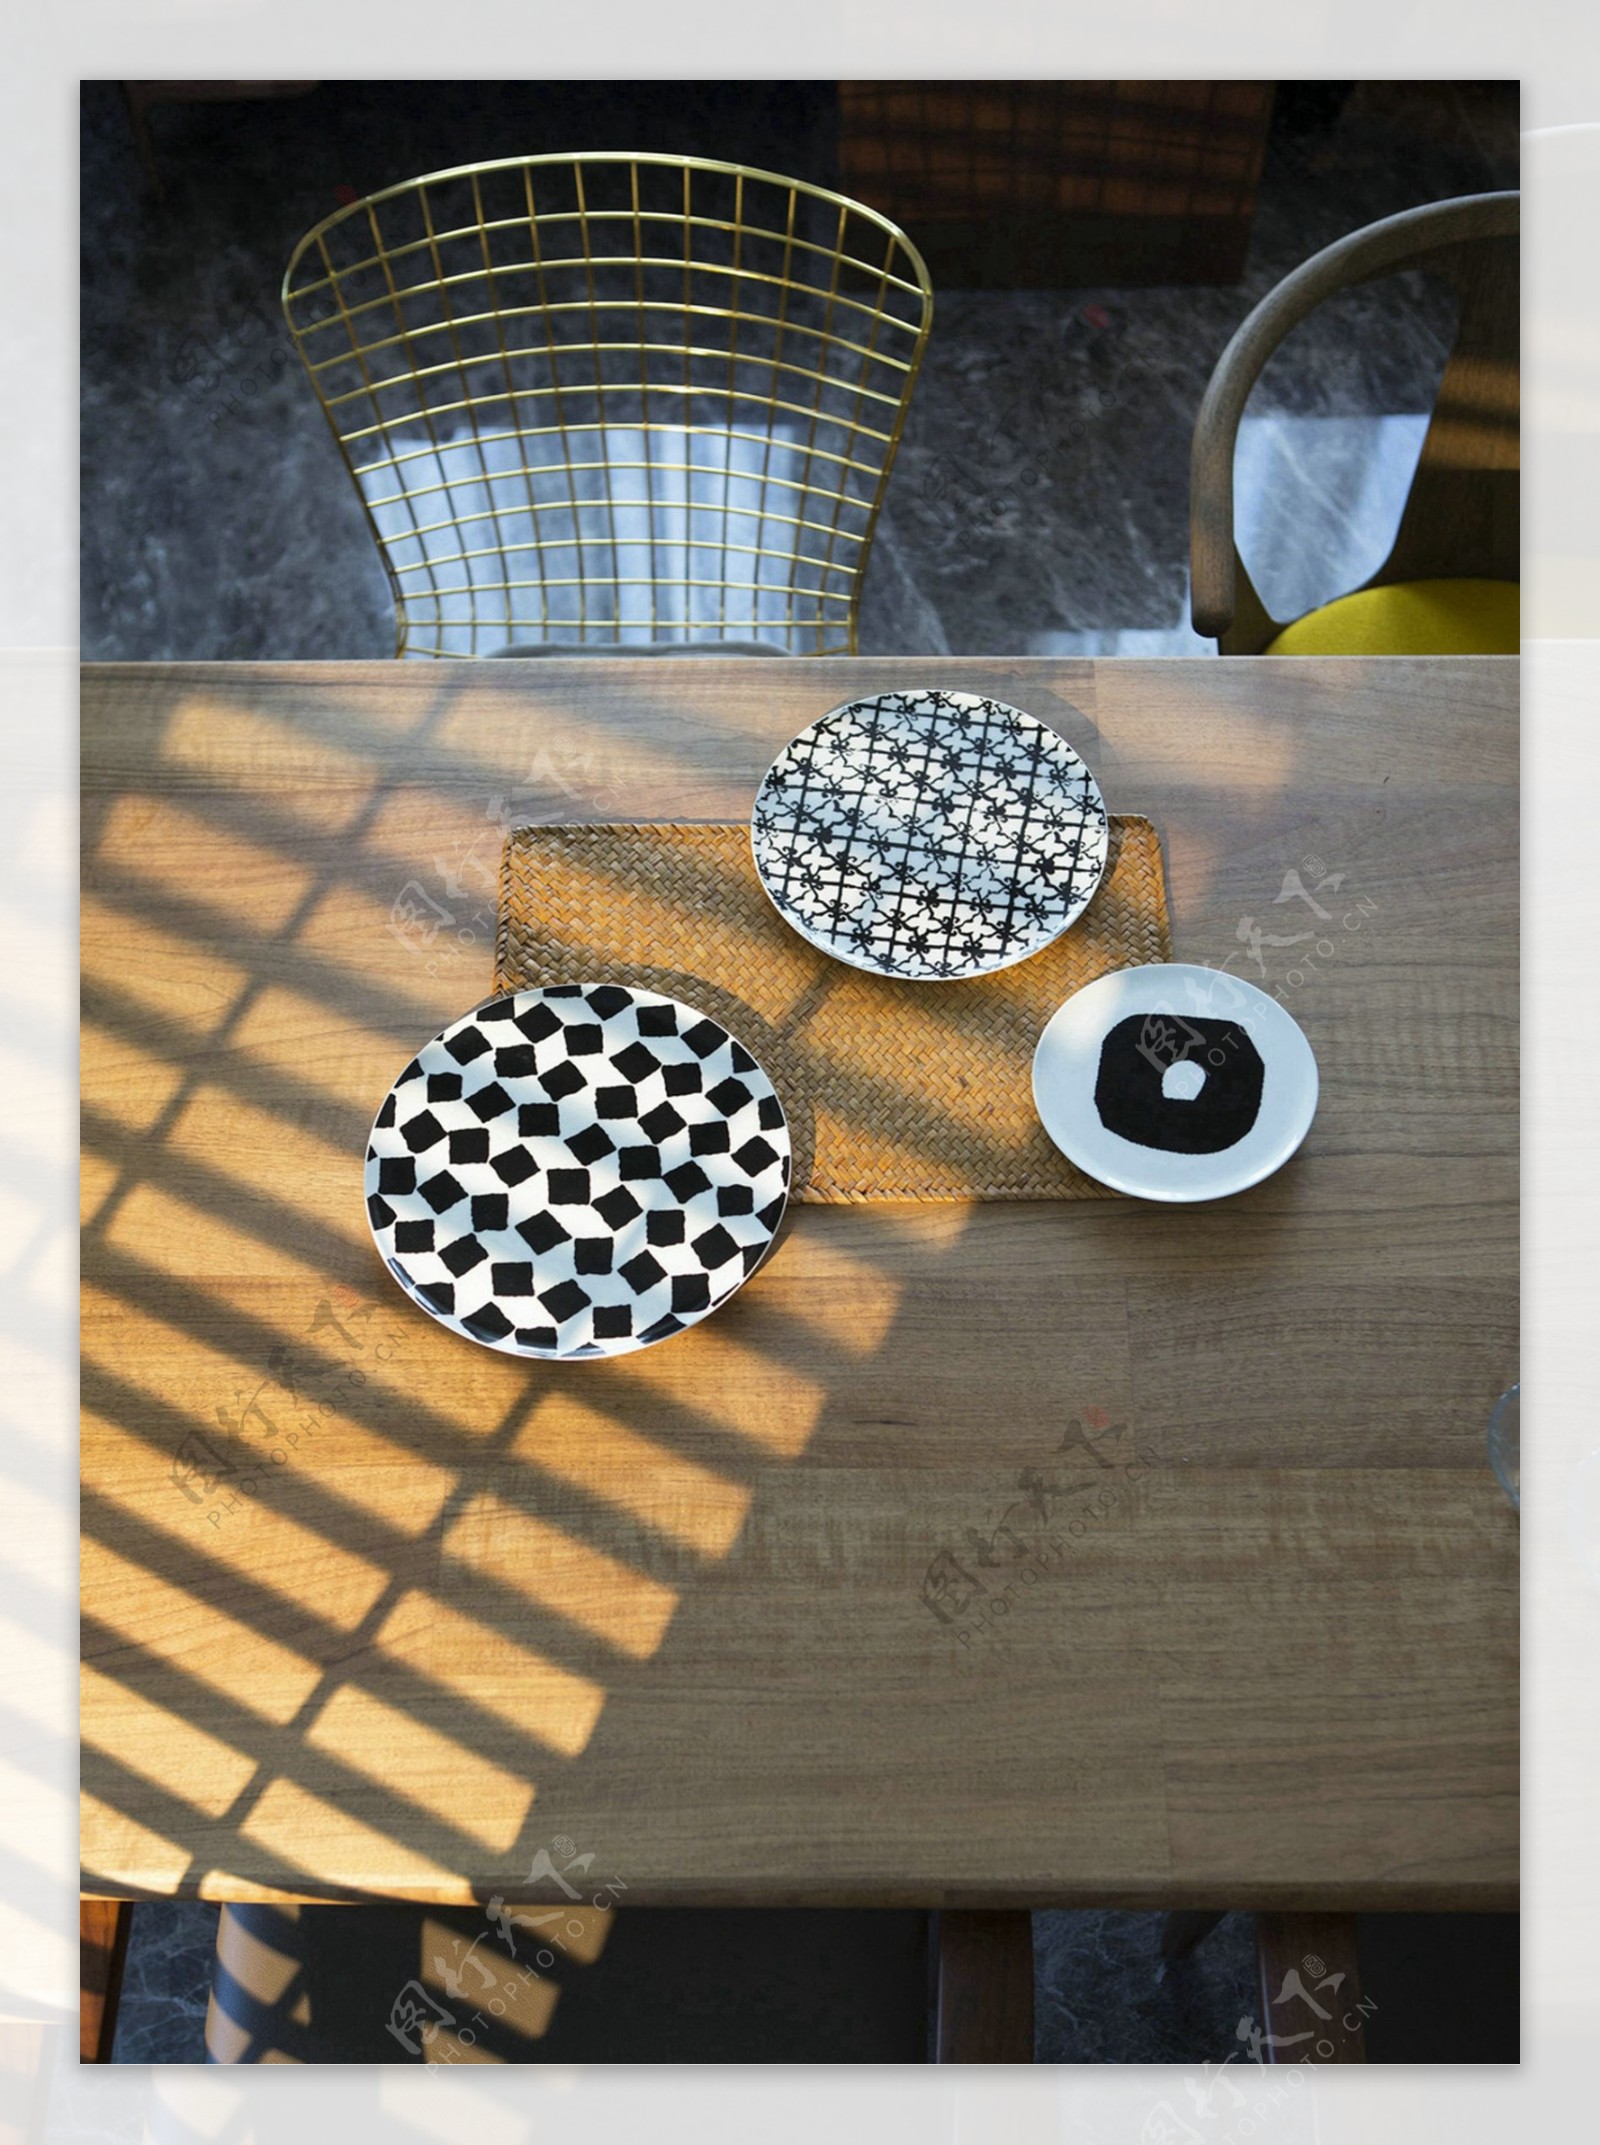 现代时尚客厅方形木制餐桌室内装修效果图